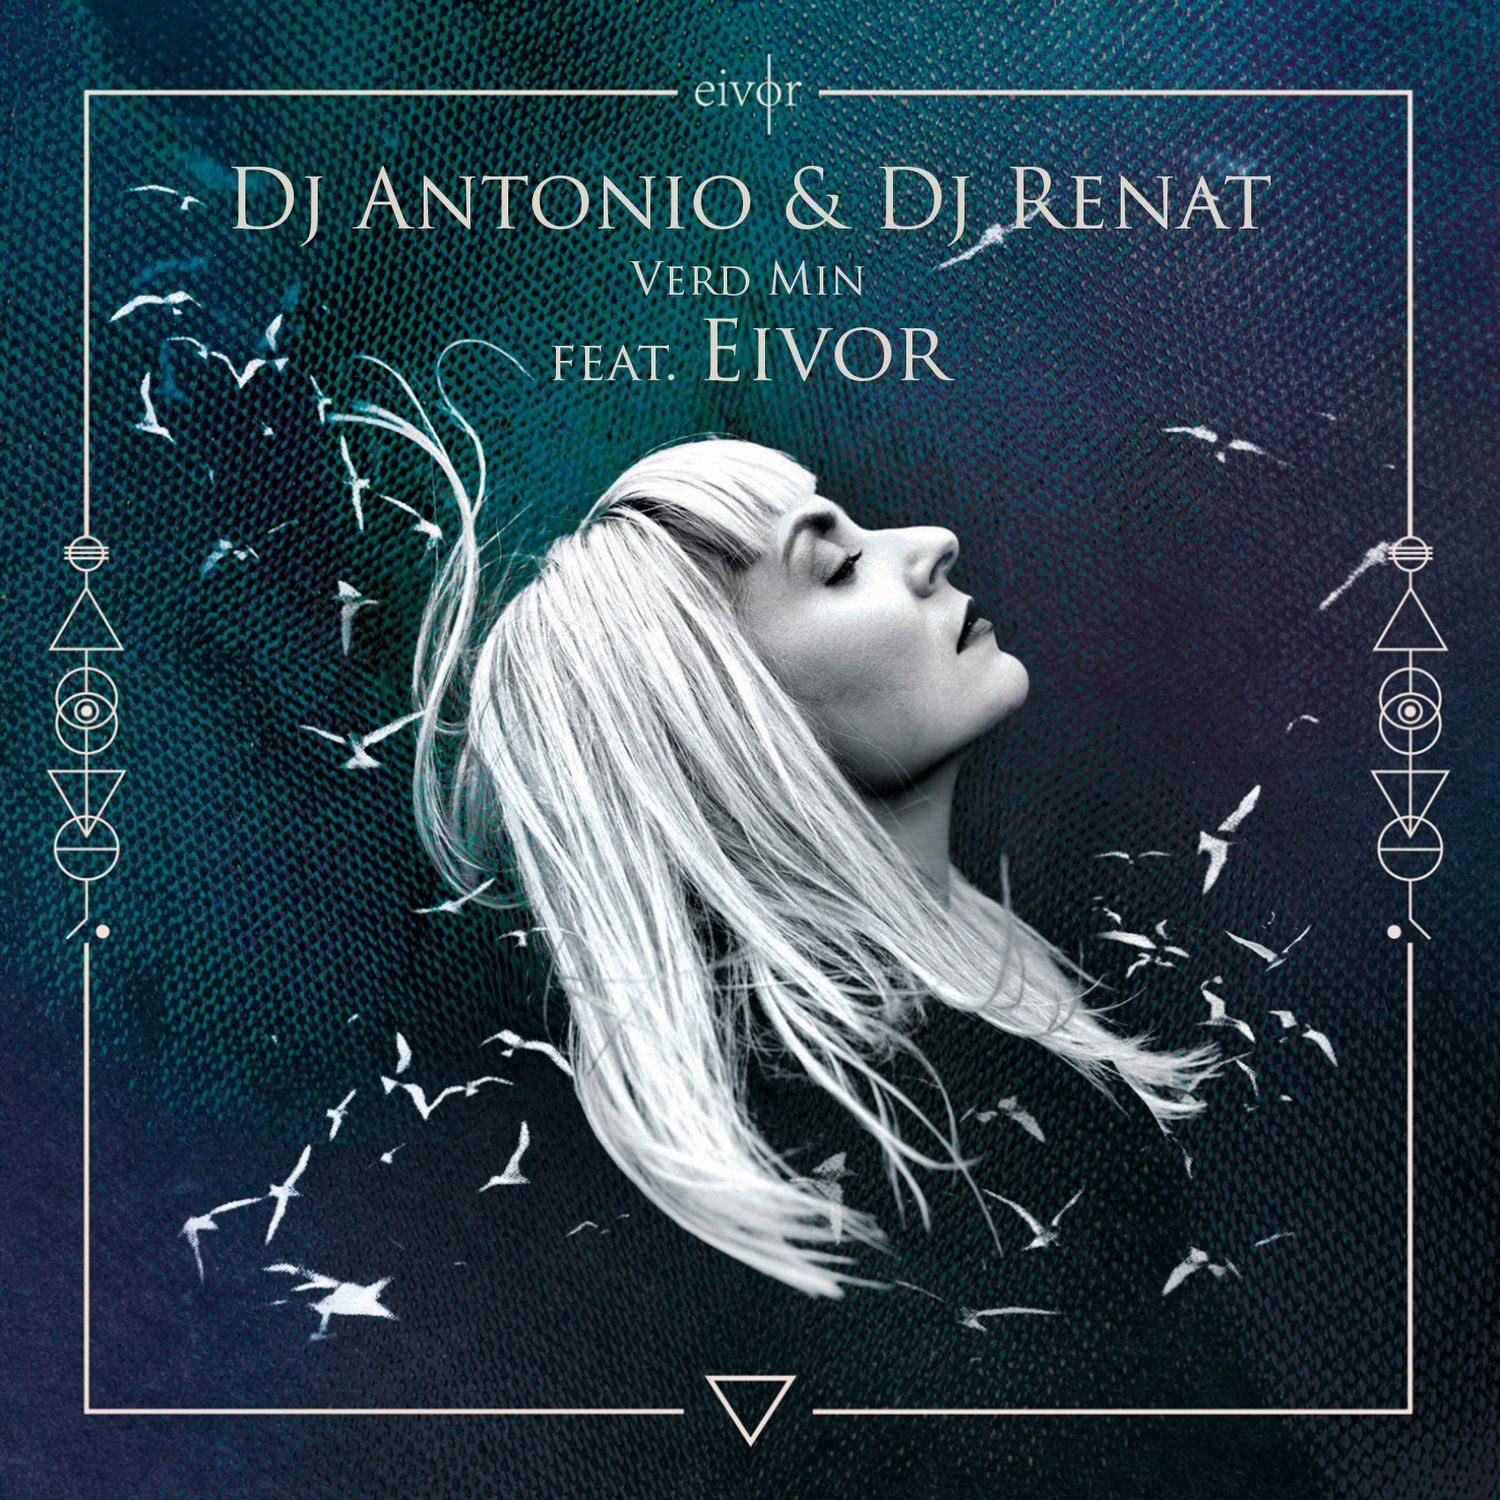 ਡਾਉਨਲੋਡ ਕਰੋ Dj Antonio & Dj Renat - Verd Min (feat. Eivor) (Club Mix)